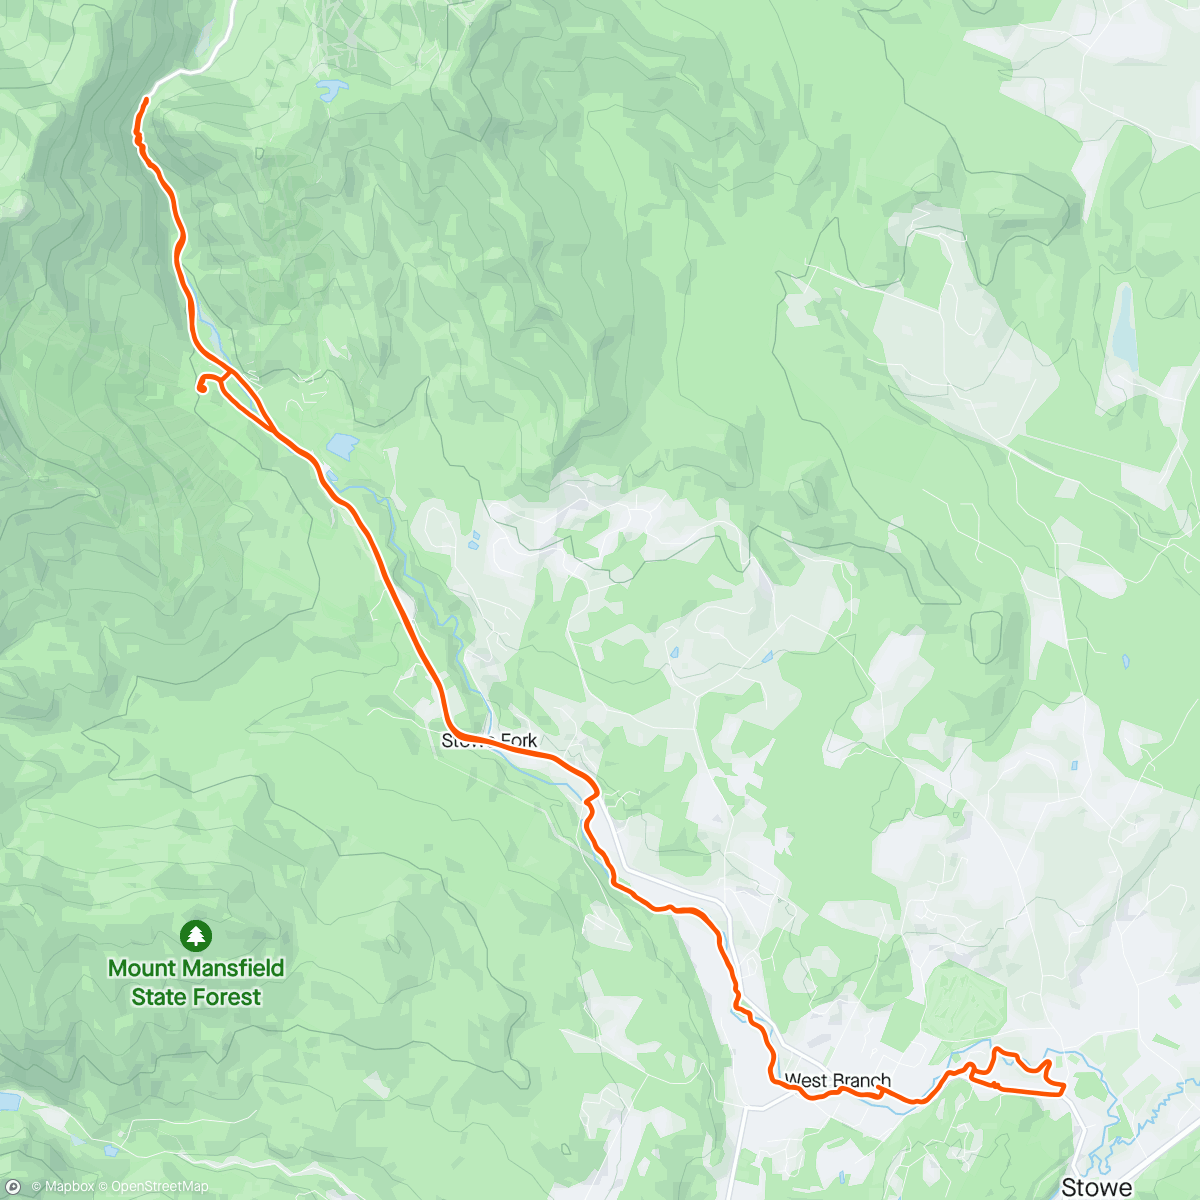 Mapa da atividade, Roamed the bike path up to Stowe and smugglers notch road